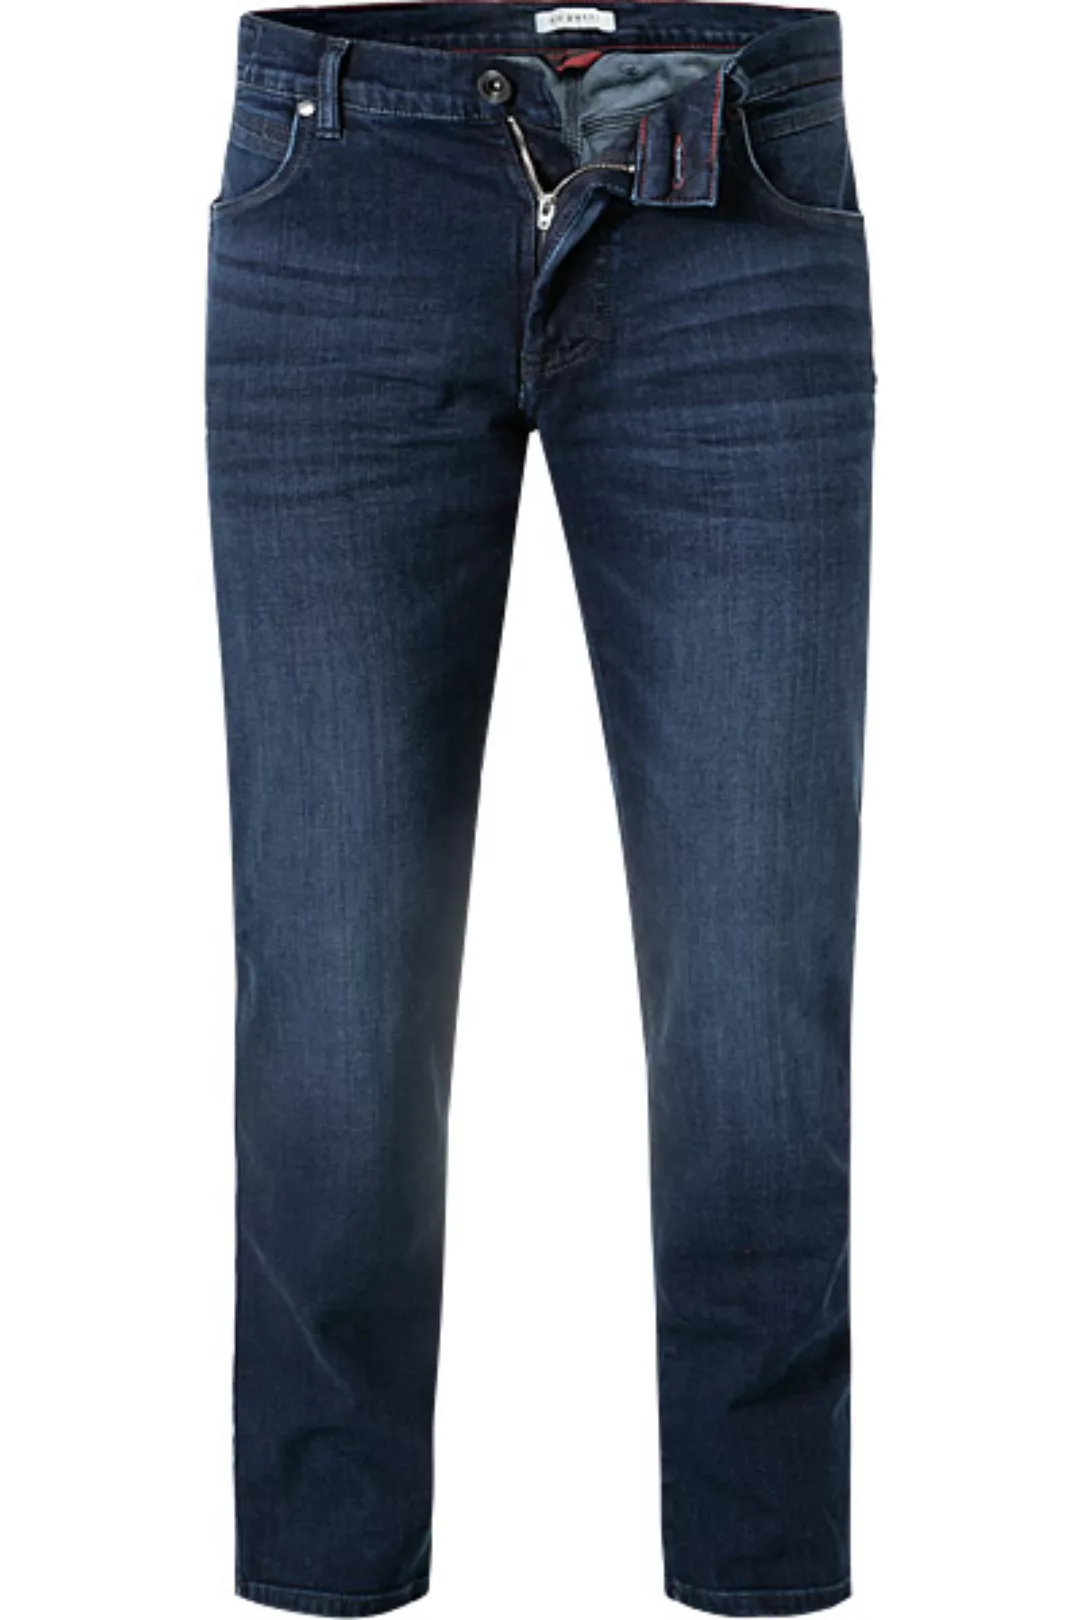 bugatti Jeans 3038D/86676/391 günstig online kaufen